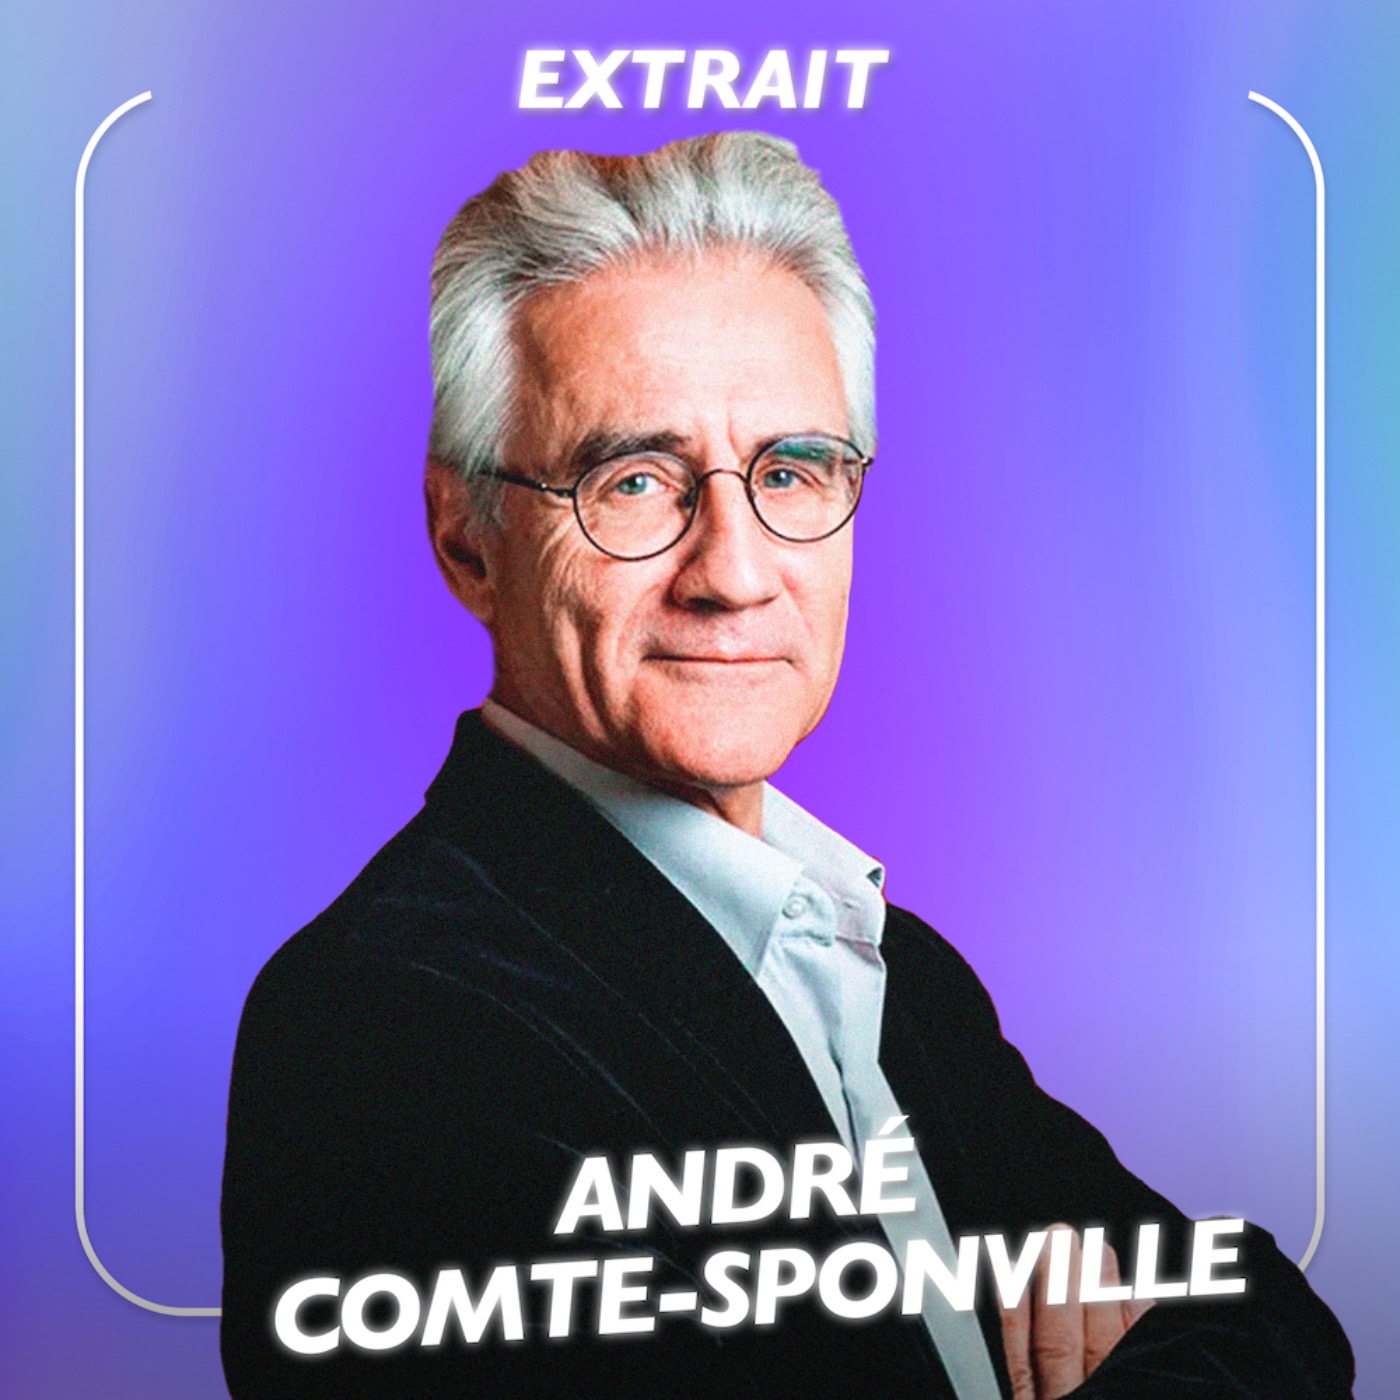 [MOMENT-CLÉ] Aller au bout de ses rêves, André Comte-Sponville déconstruit l'idéalisme